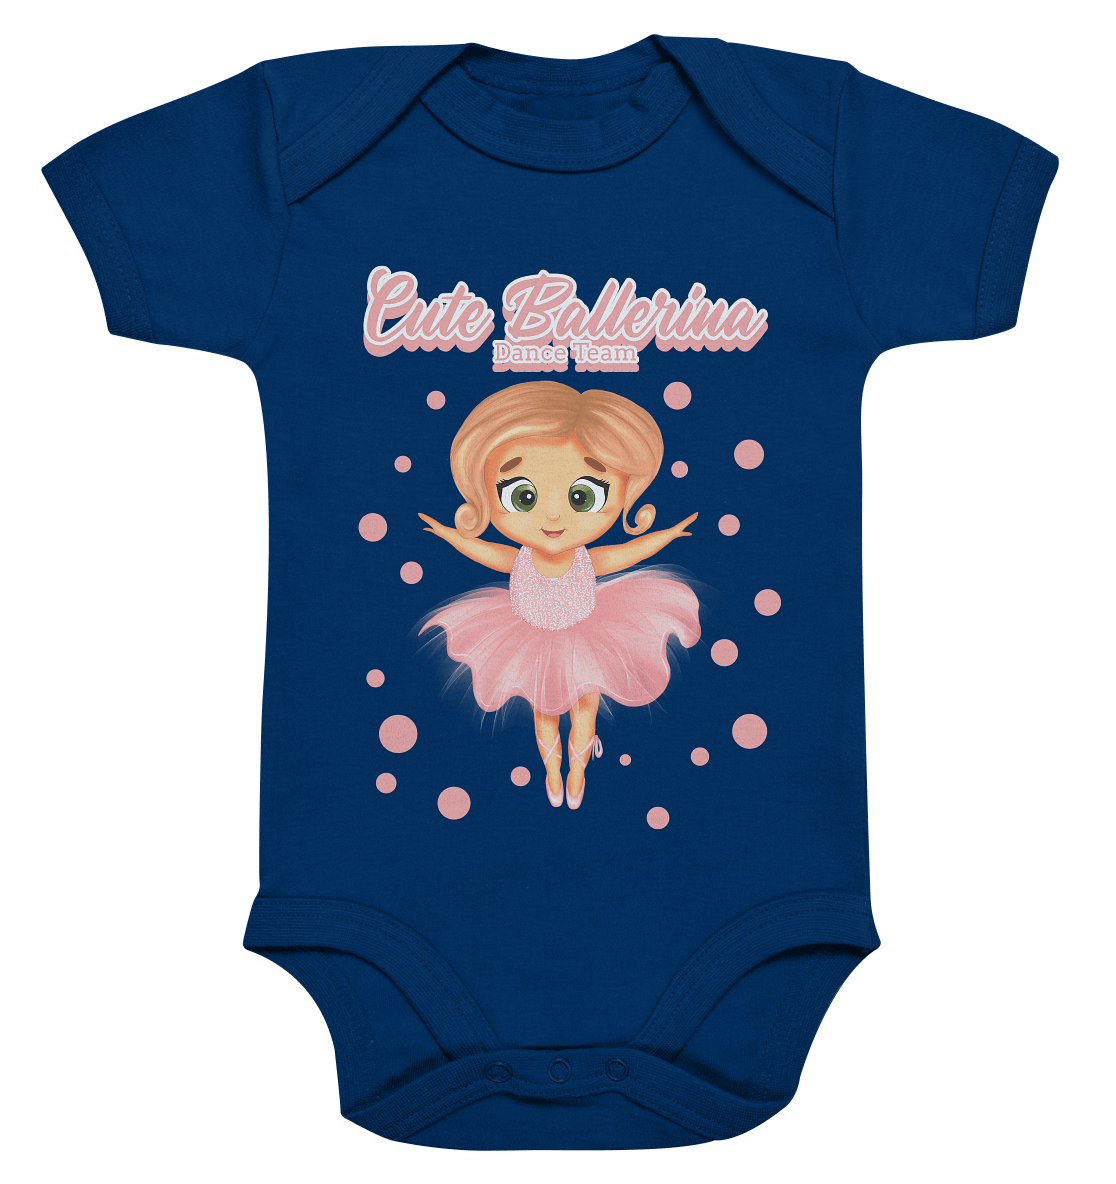 Baby Body in dunkel blau mit handgezeichneten Ballerina Cartoon.